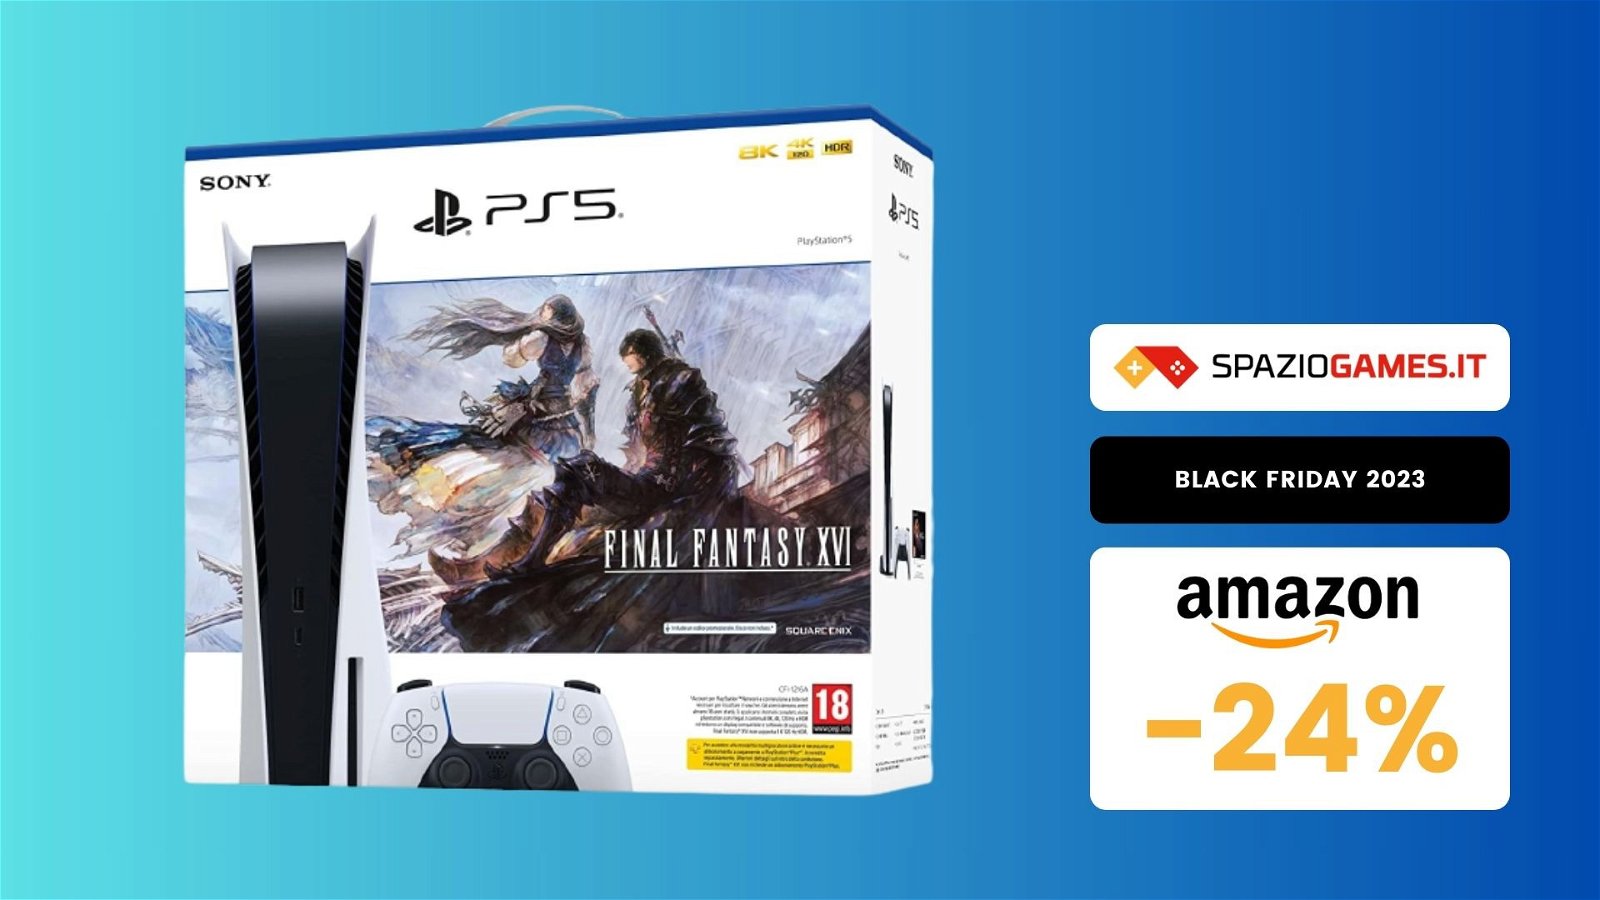 CALO di prezzo imperdibile per il bundle PS5 + Final Fantasy XVI: ora a soli 469€